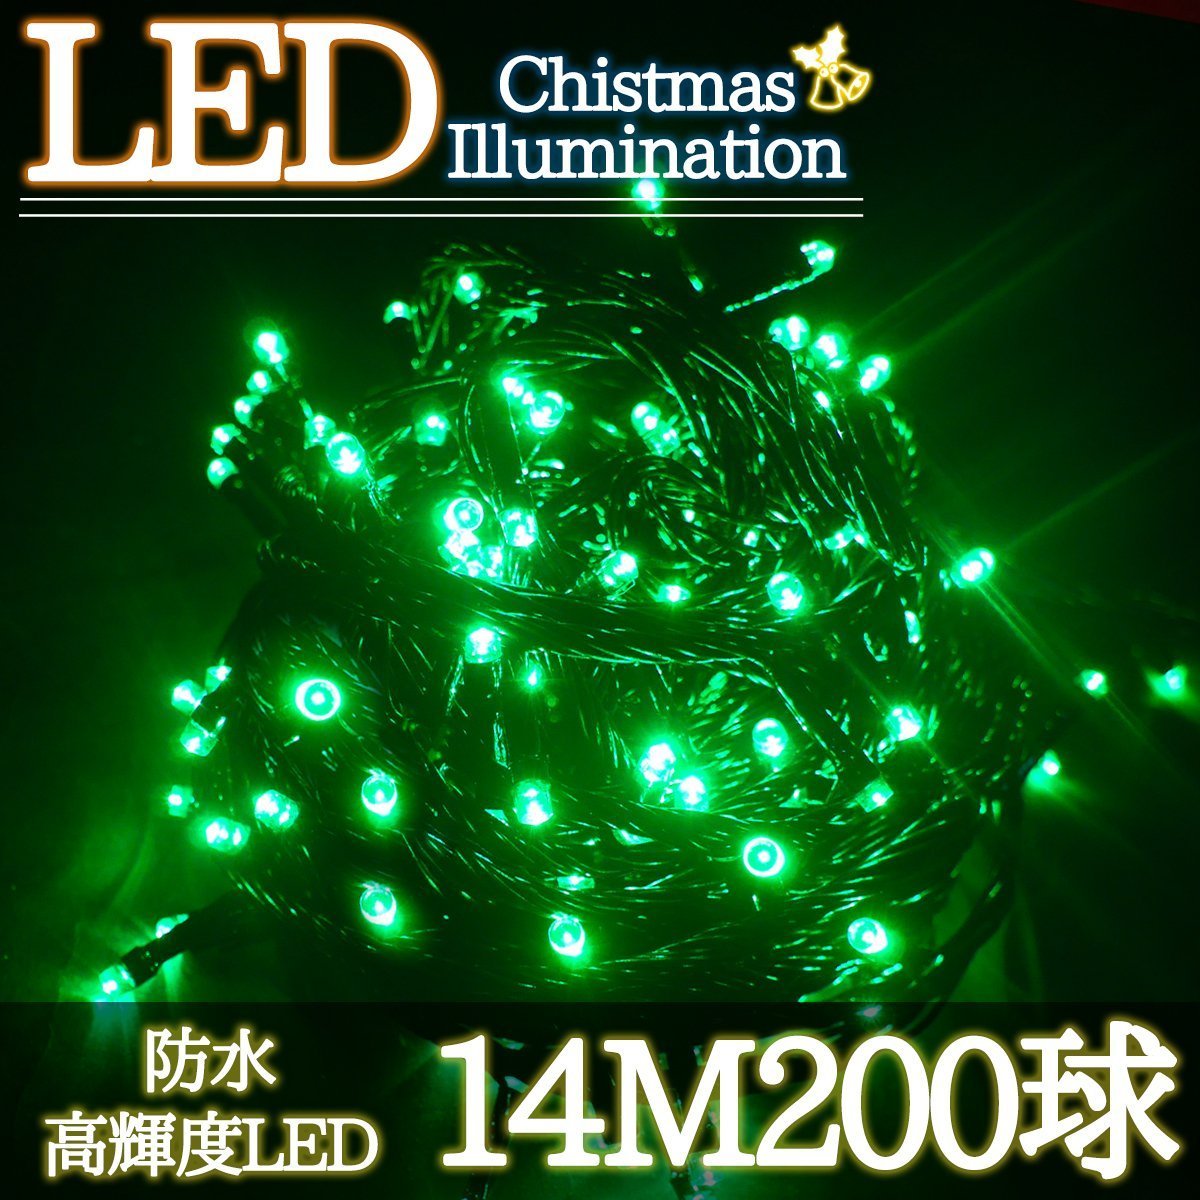 LEDイルミネーション 14M LED200灯 クリスマス つらら ブラックコード 電飾 屋外 ガーデン 庭 防水 連結可能 グリーン 単品 KR-96_画像1